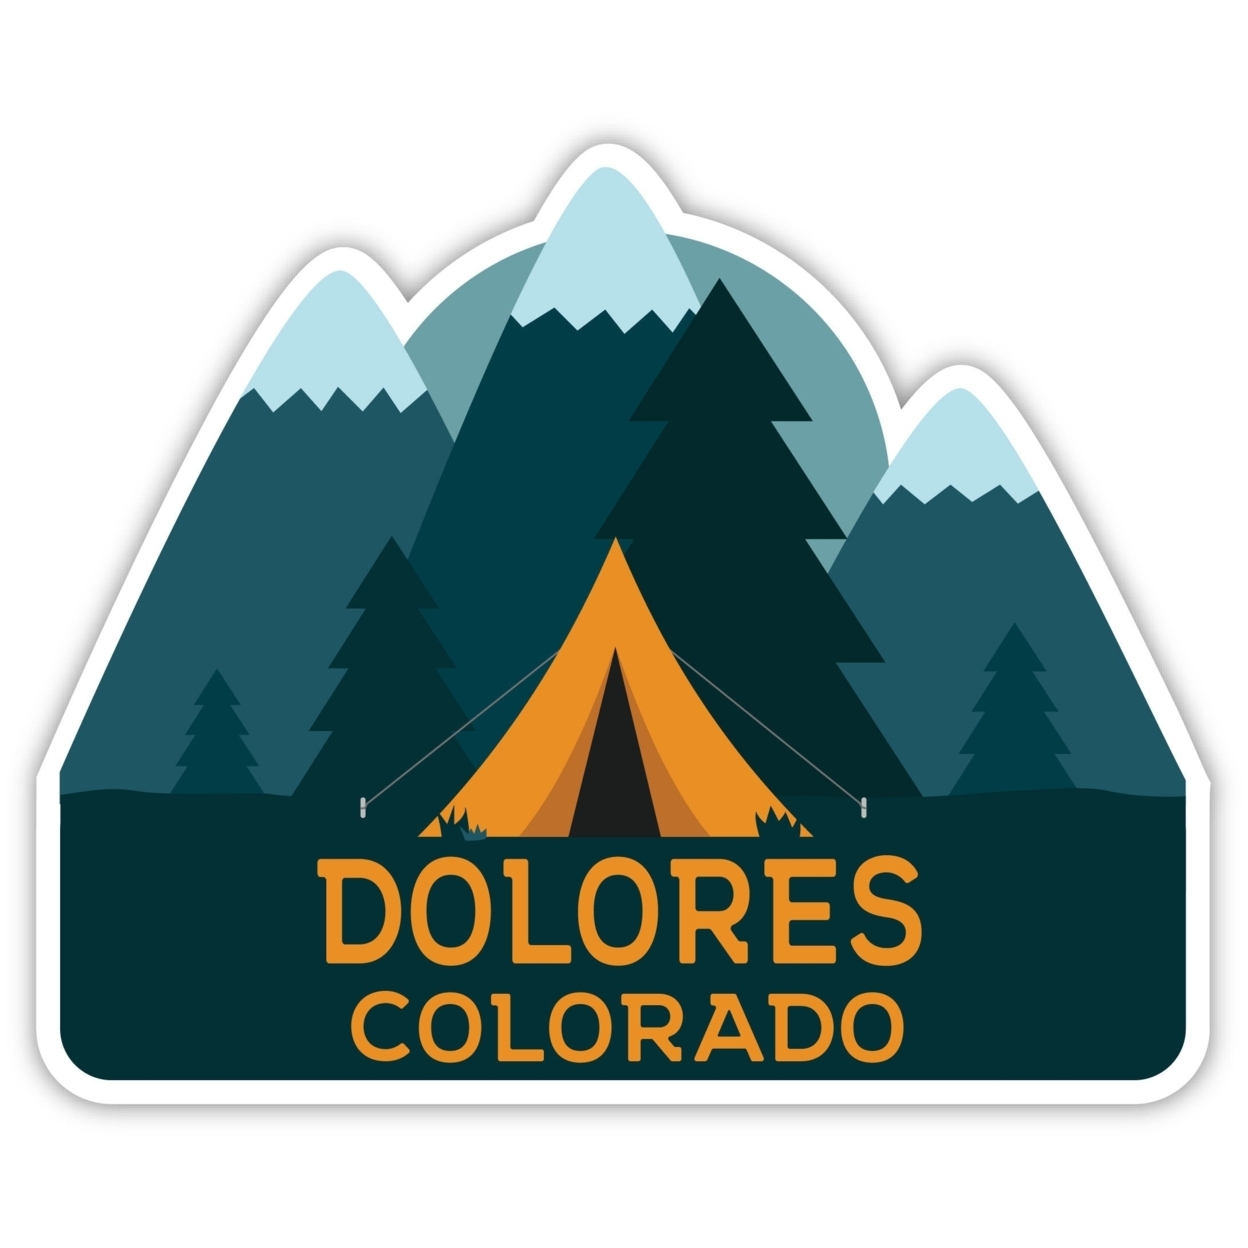 Dolores Colorado Souvenir Decorative Stickers (Choose Theme And Size) - Single Unit, 2-Inch, Tent